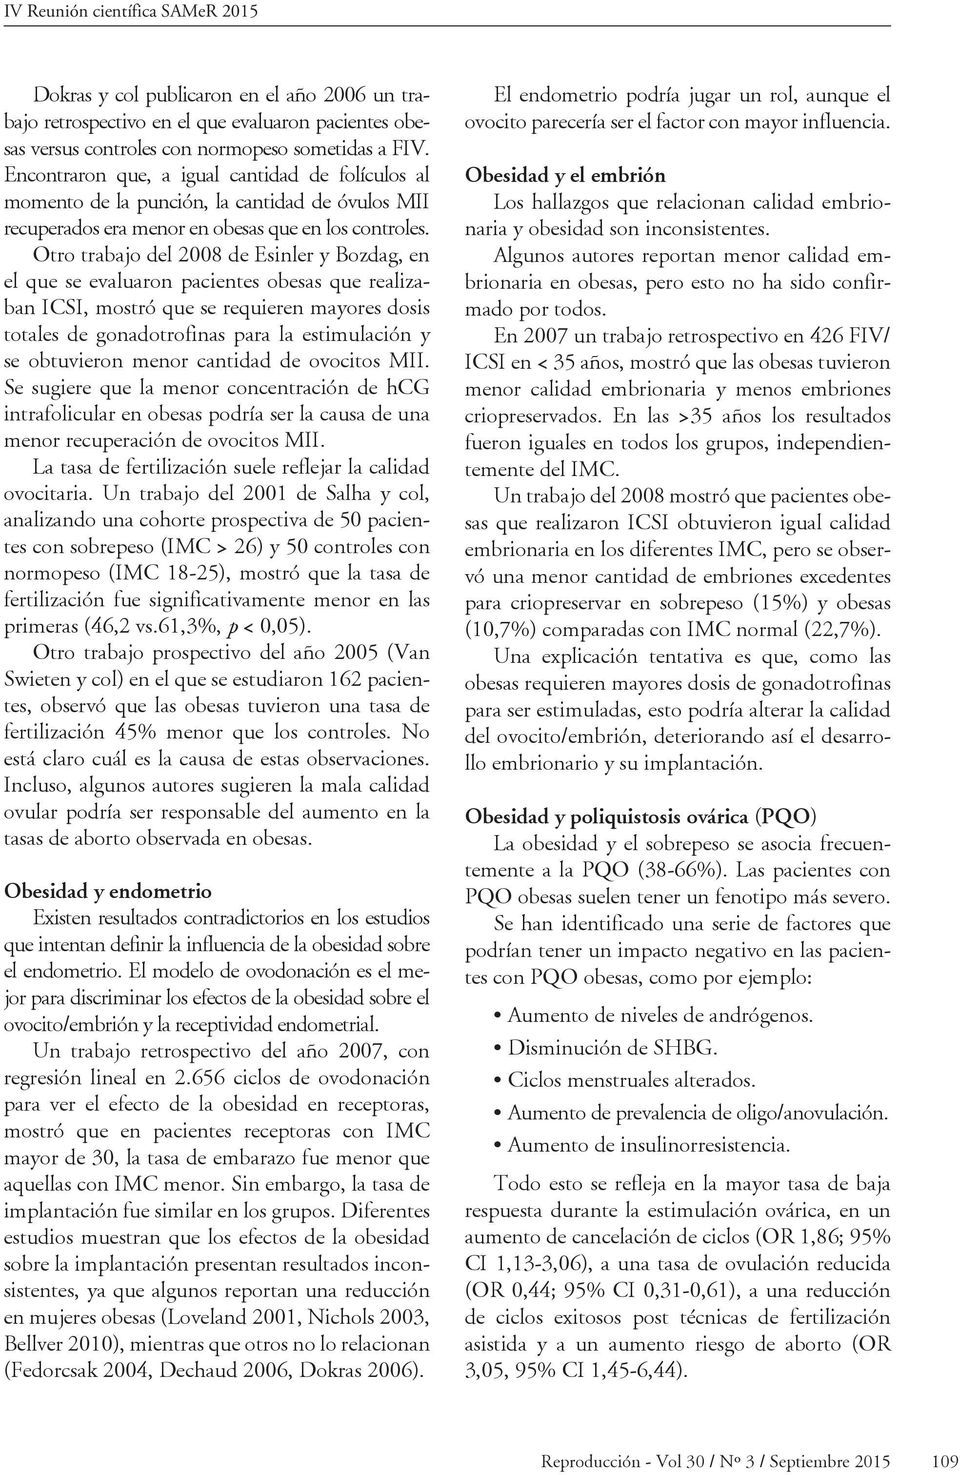 Otro trabajo del 2008 de Esinler y Bozdag, en el que se evaluaron pacientes obesas que realizaban ICSI, mostró que se requieren mayores dosis totales de gonadotrofinas para la estimulación y se